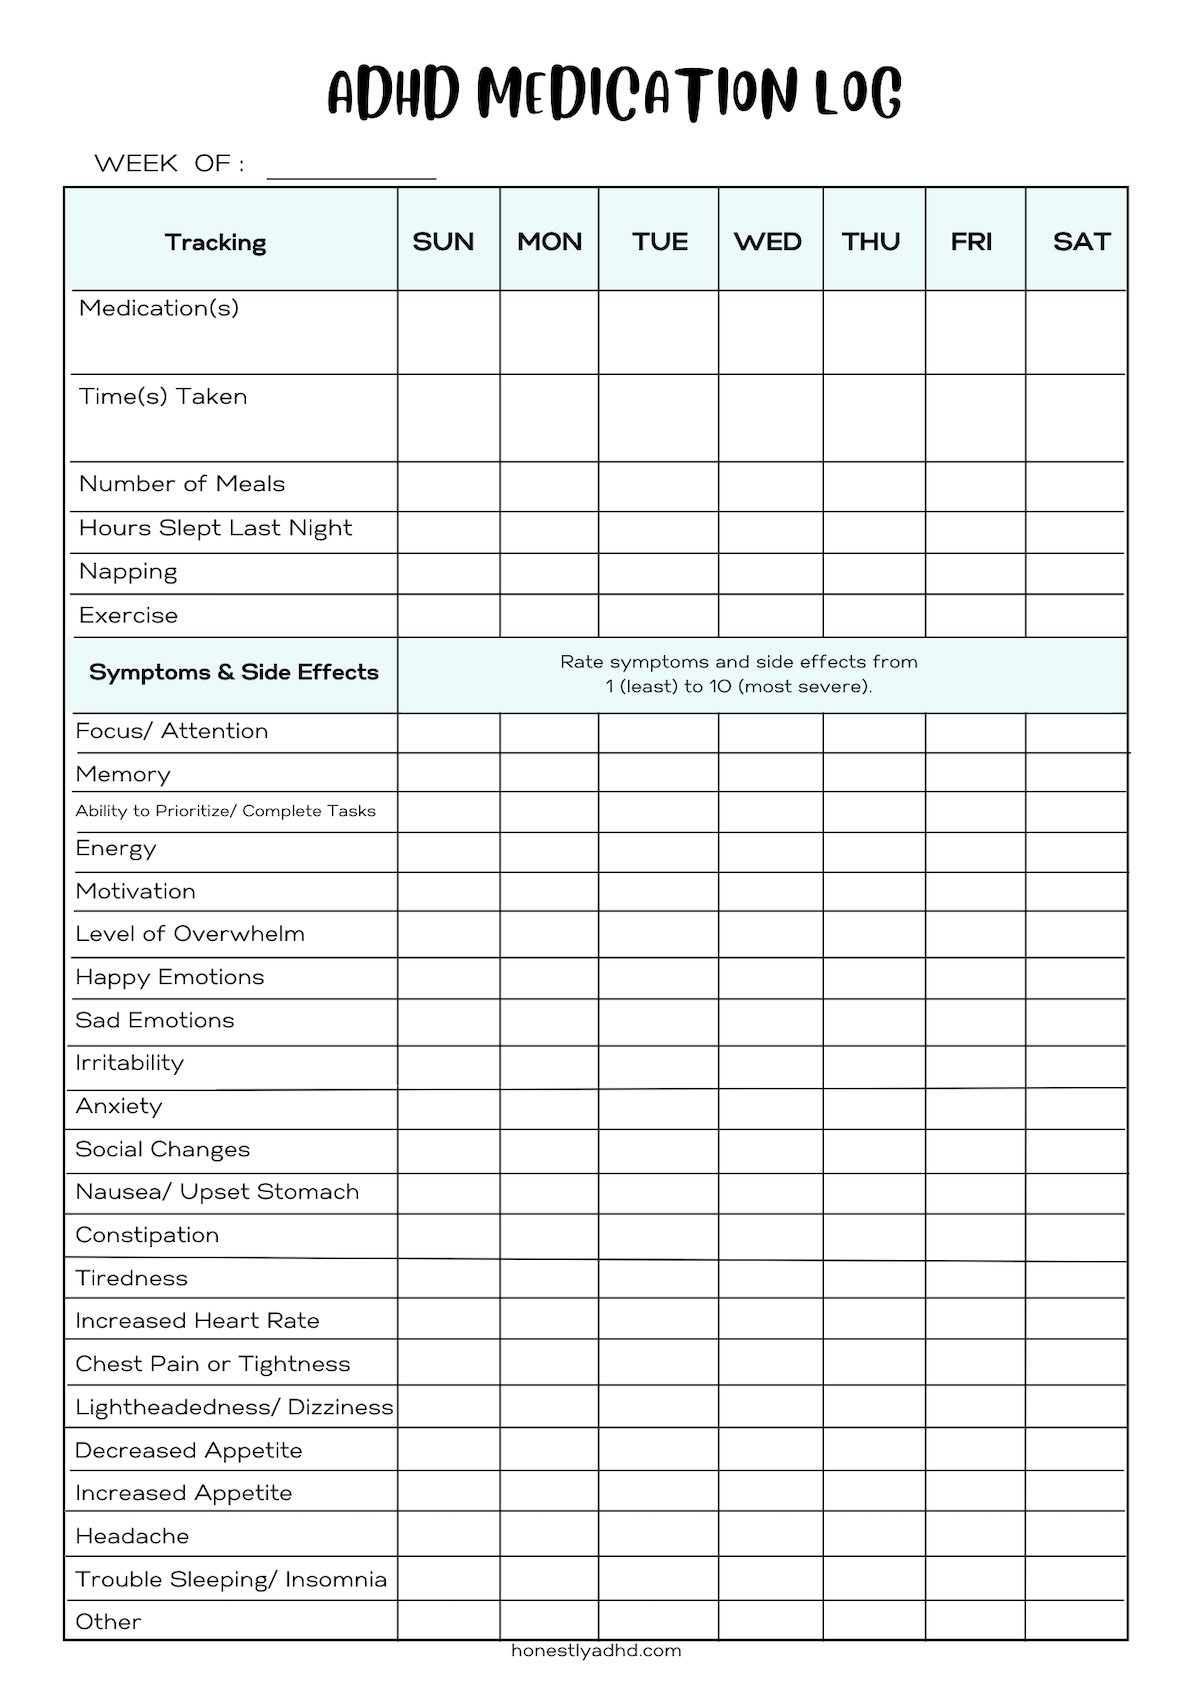 An adhd symptom log and medication tracker printable pdf.